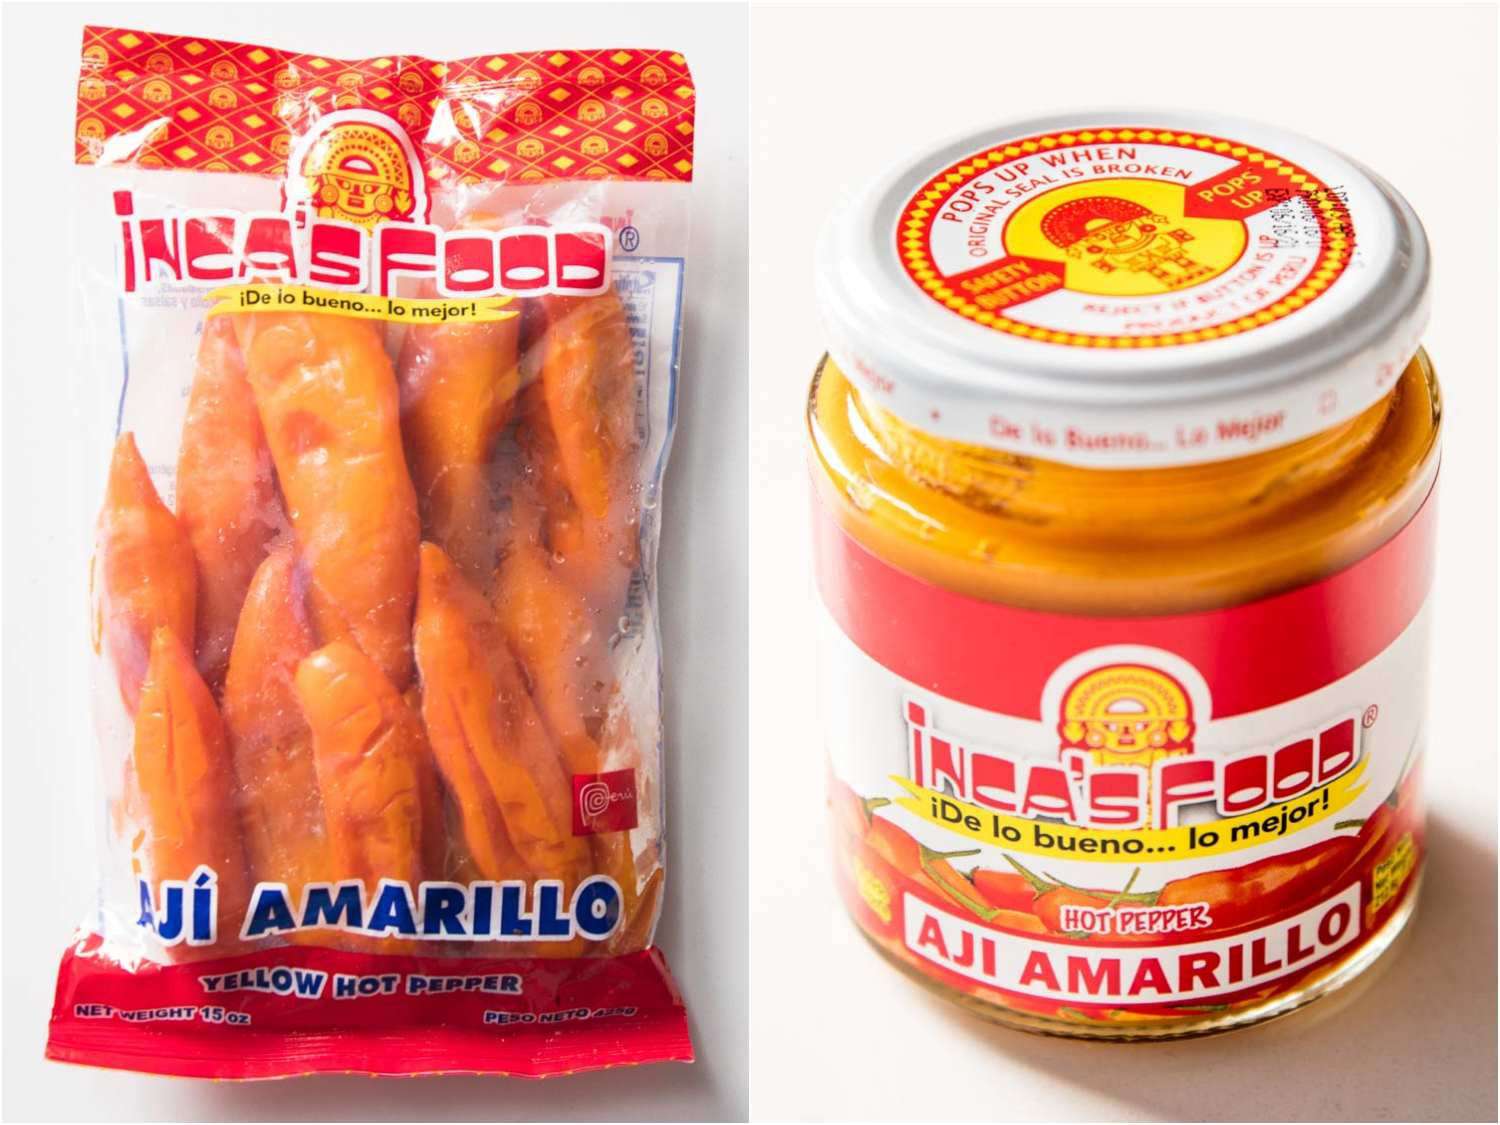 拼贴的橙色阿吉阿马里洛辣椒包装和罐膏形式